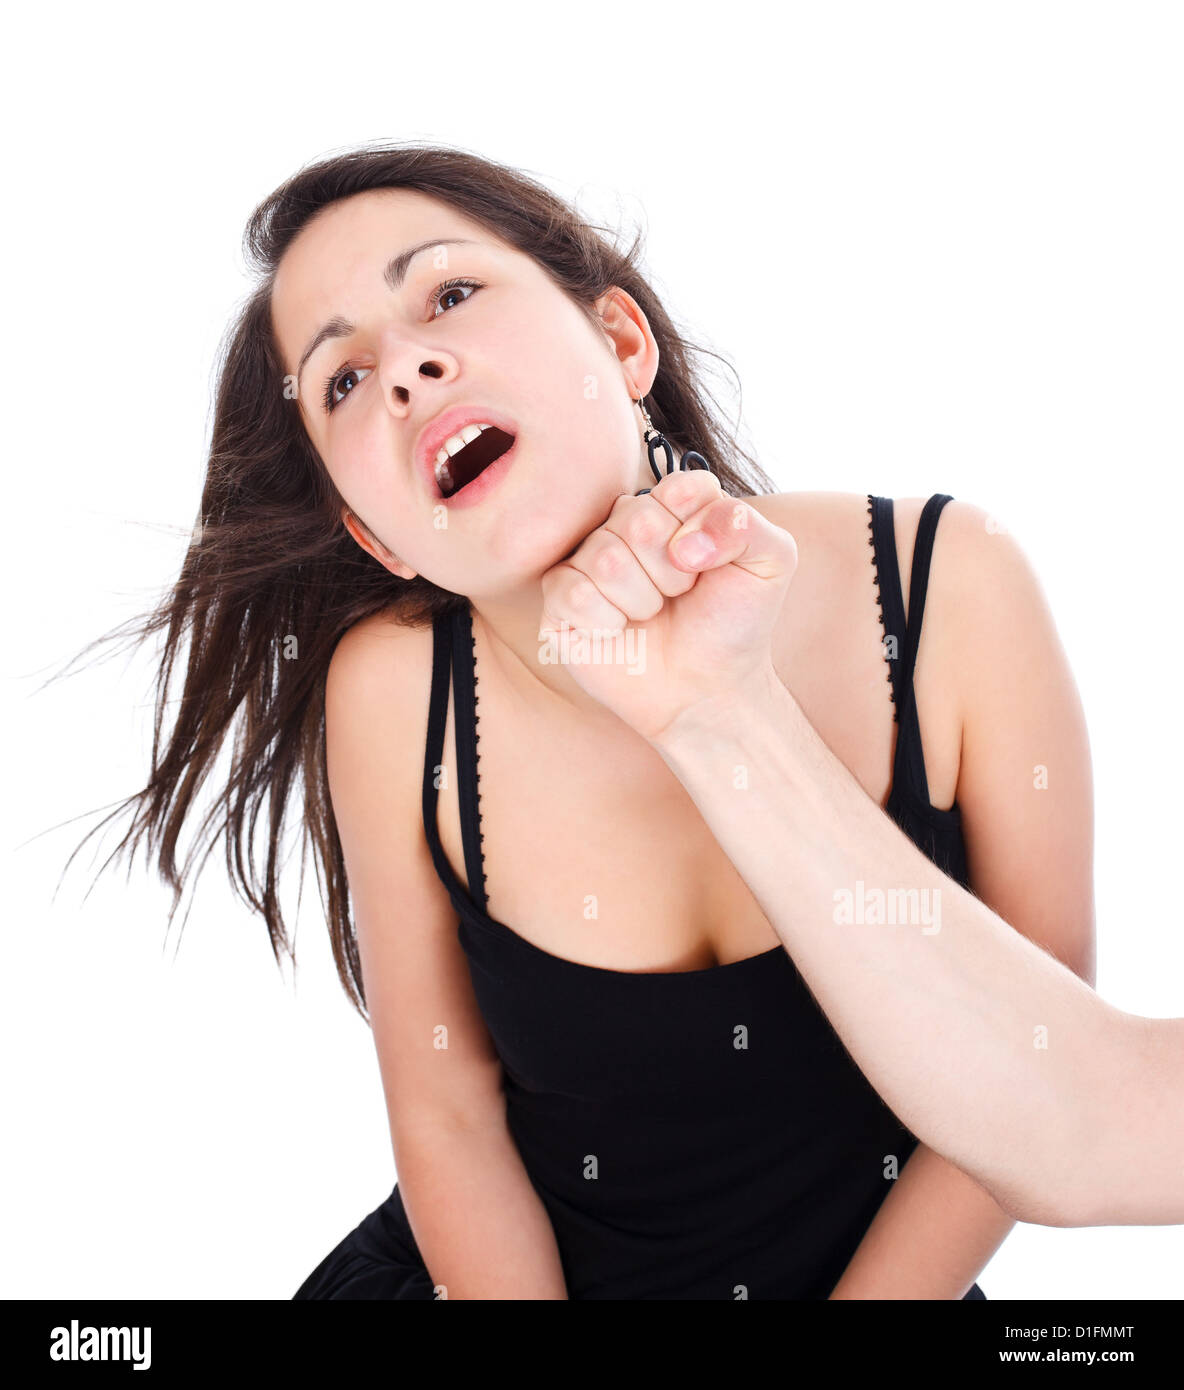 Ragazza adolescente ottenendo un punzone da una mano su sfondo bianco Foto Stock